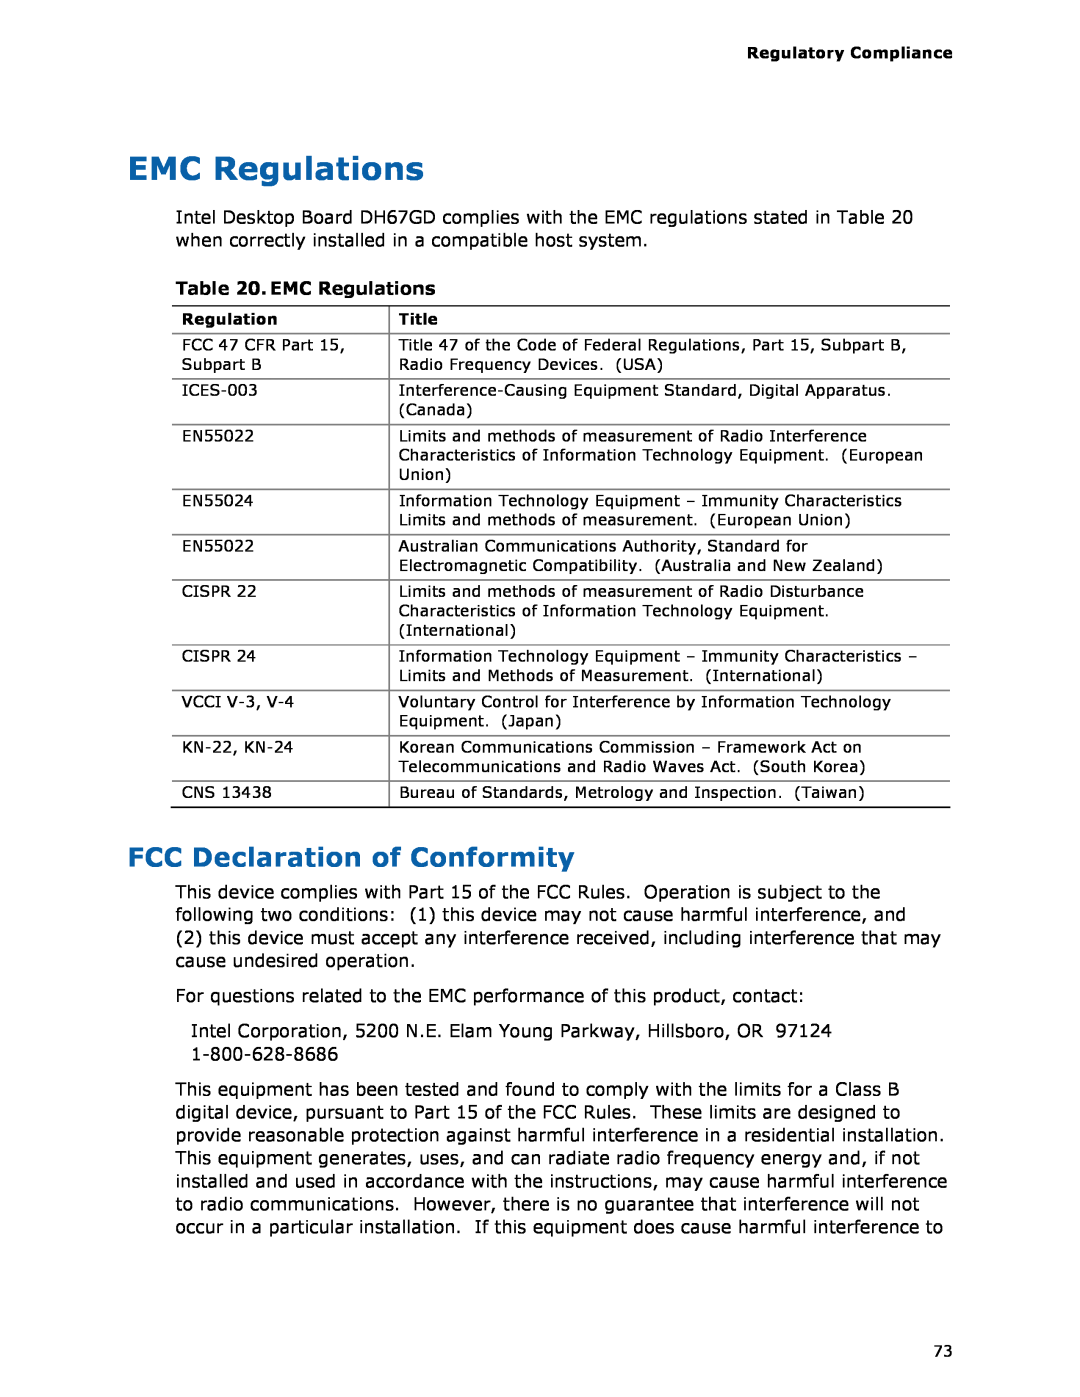 Intel BLKDH67GDB3, G13841-001 manual EMC Regulations, FCC Declaration of Conformity 